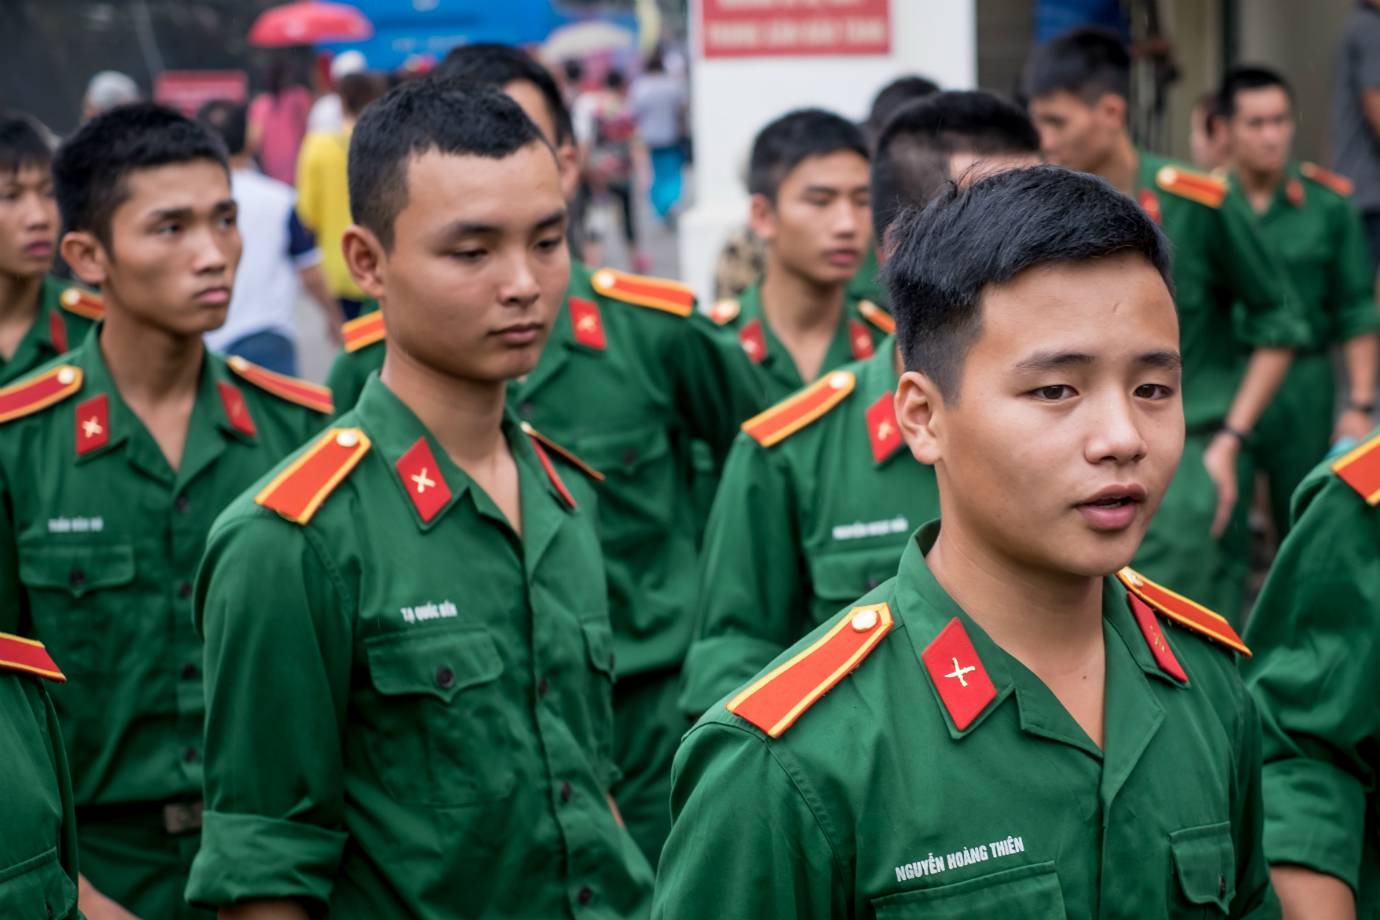 17º. Vietnã
Pontuação geral em 2016	0.3684
Orçamento da Defesa	3,3 bilhões de dólares
Mão de obra disponível	50,6 milhões de pessoas
Classificação em 2015	21º